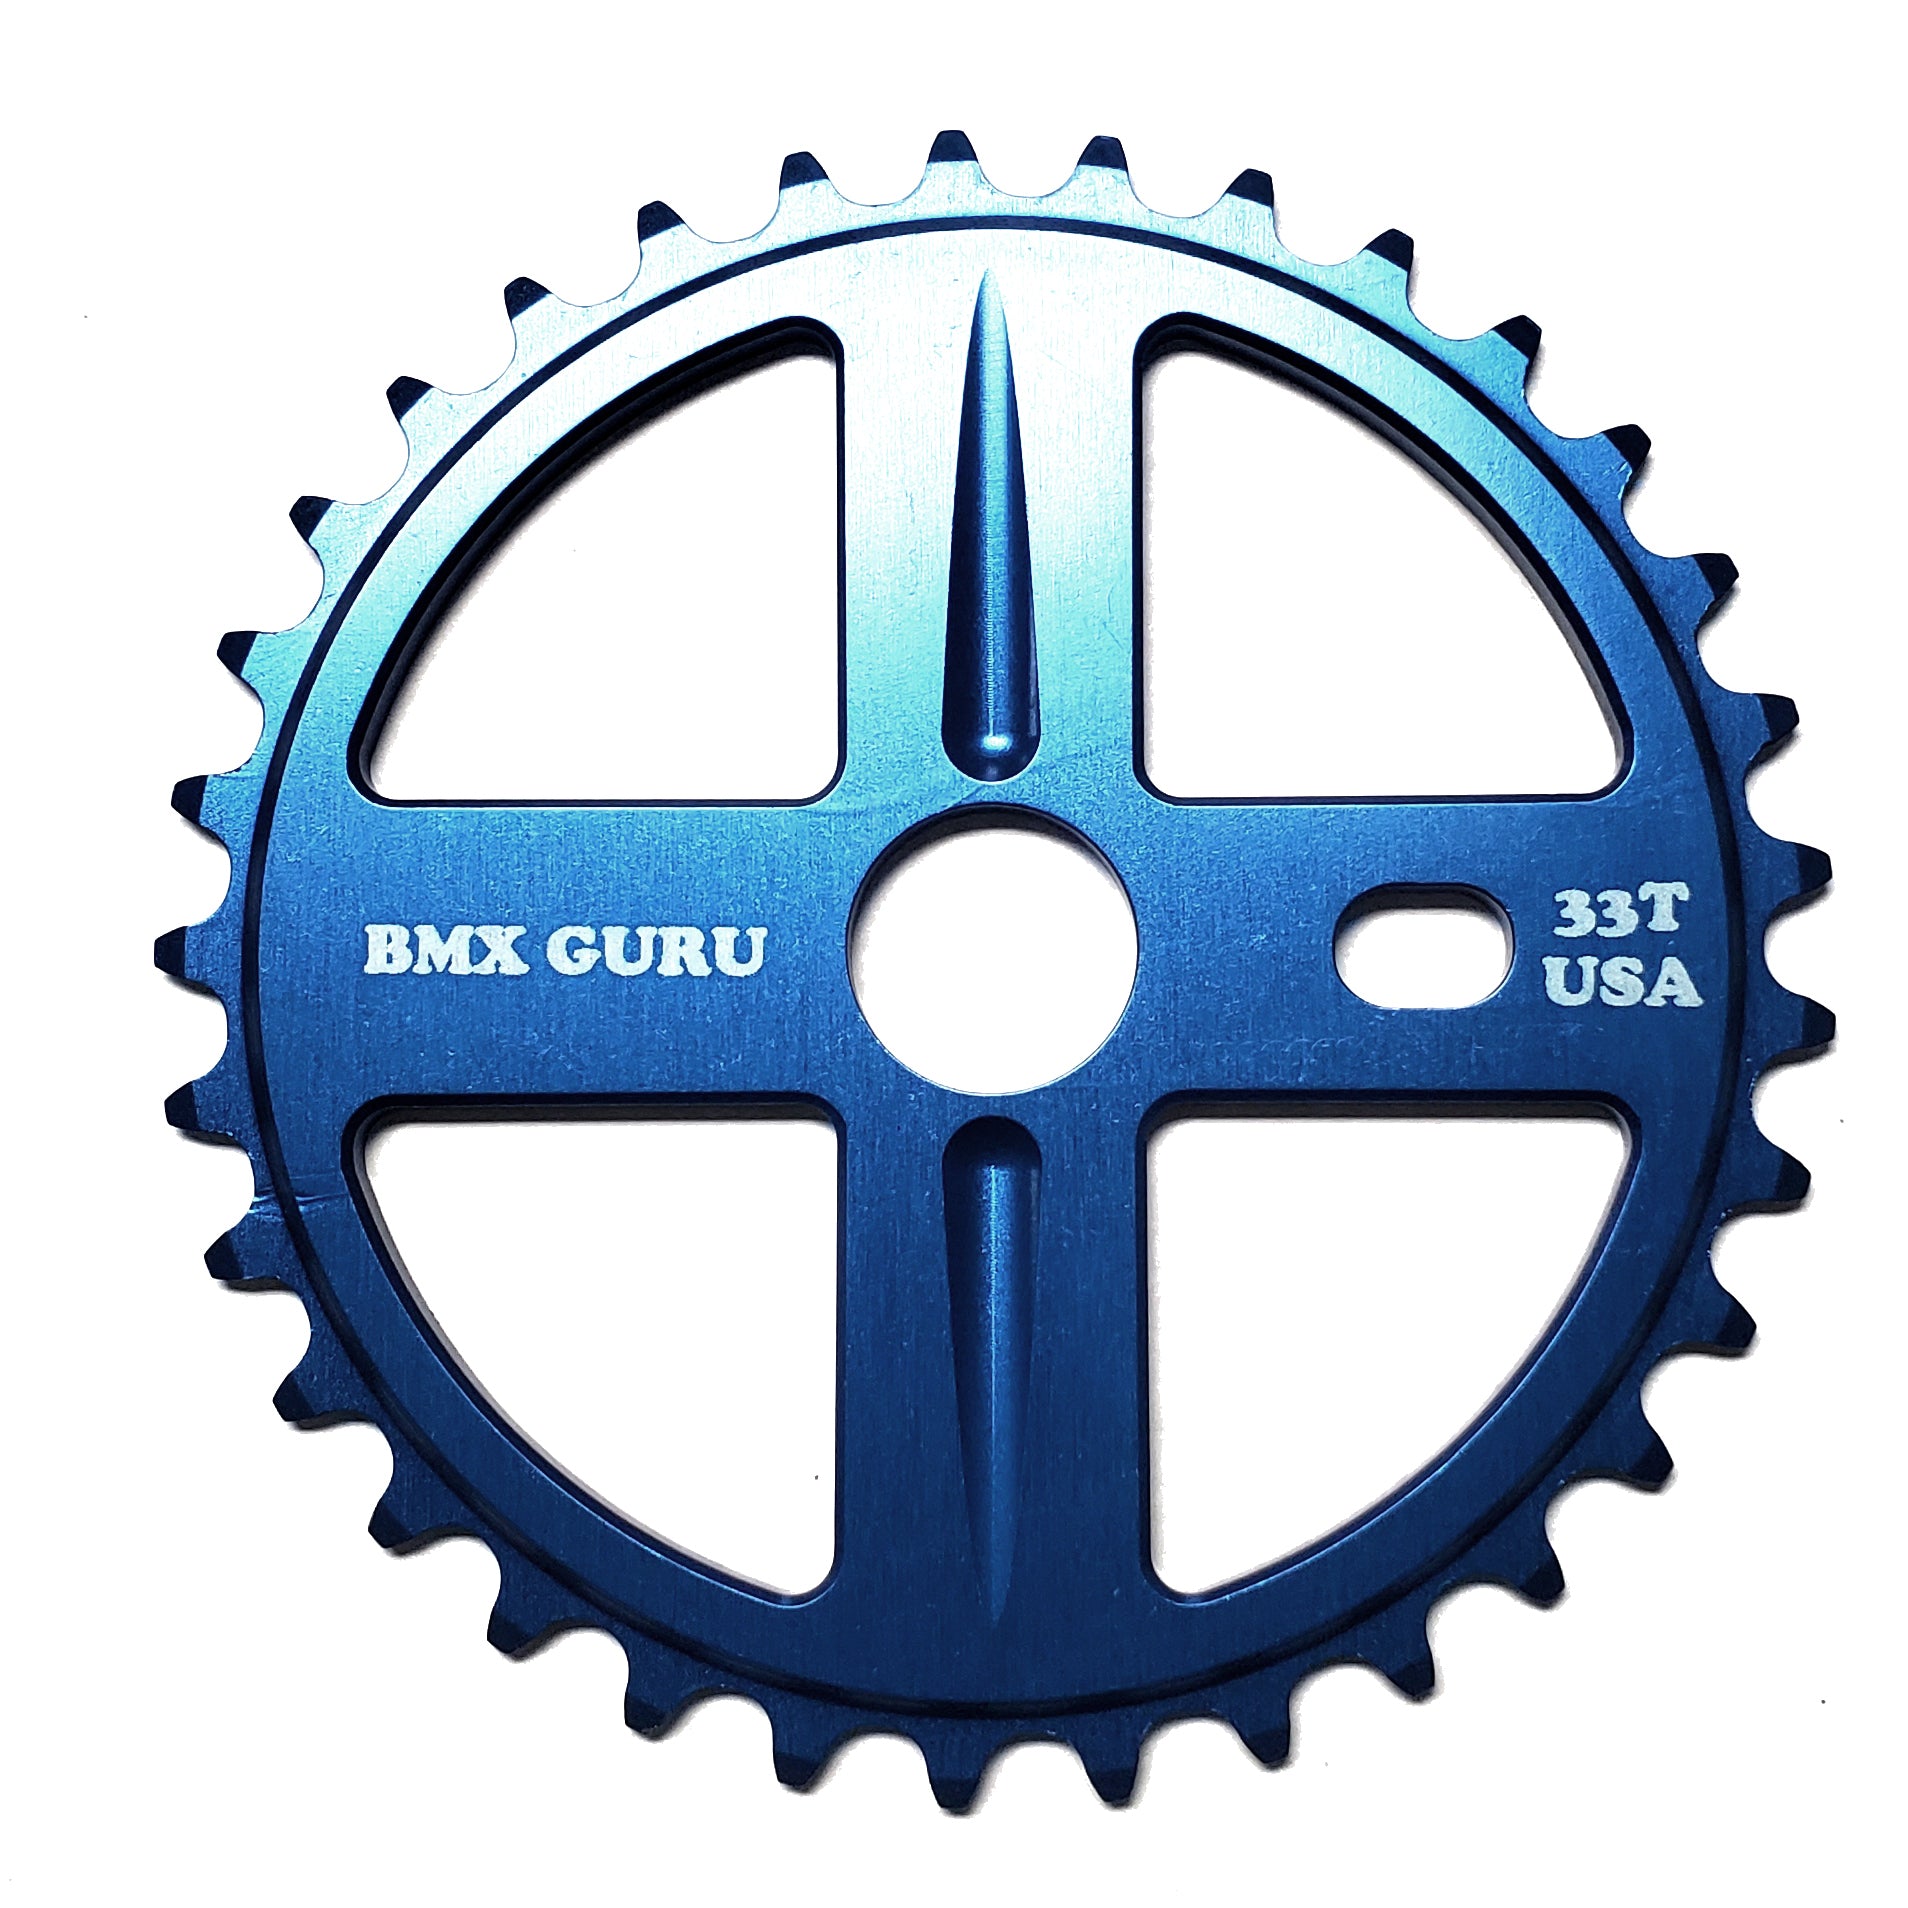 BMXGuru 33t Bolt Drive BMX Aluminum Sprocket / Chainwheel - Blue - USA Made